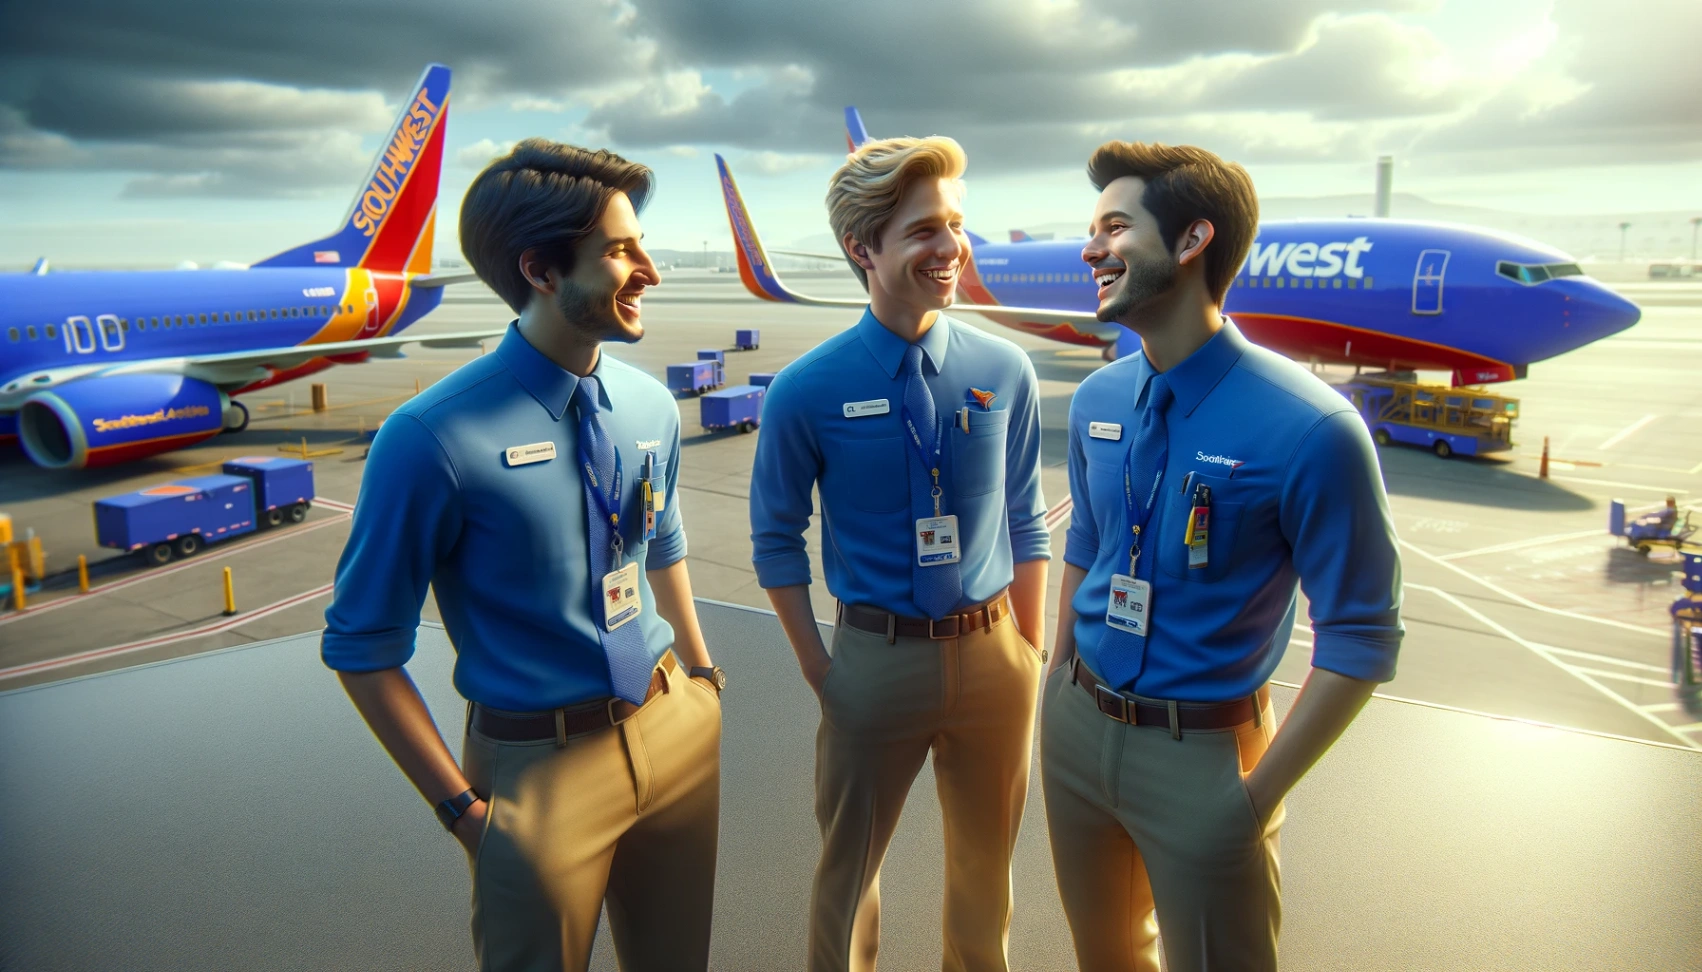 Offerte di lavoro presso Southwest Airlines: Scopri come candidarti